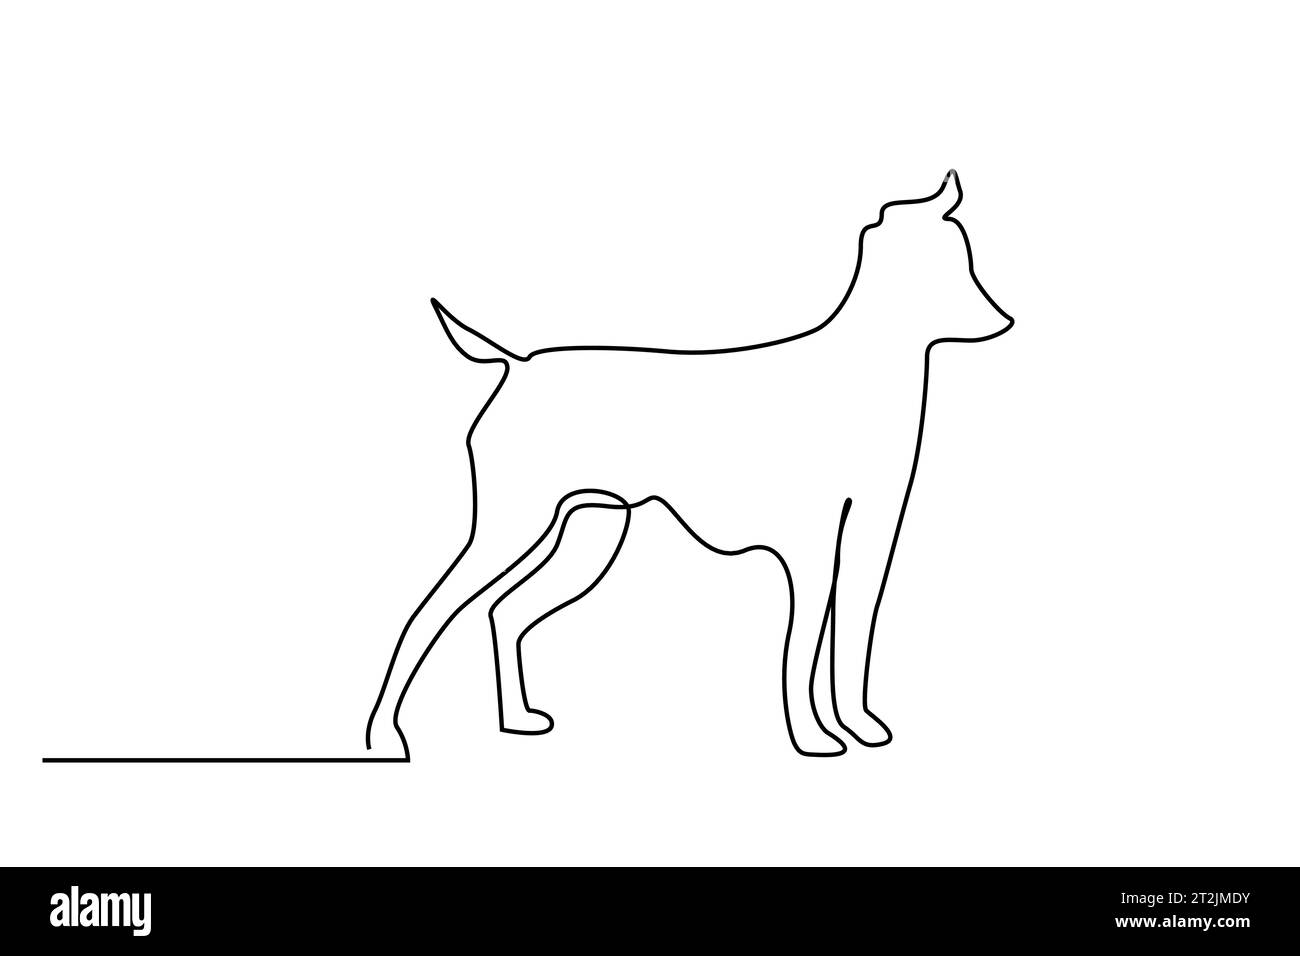 cute dog animal full body length line art Stock Vector